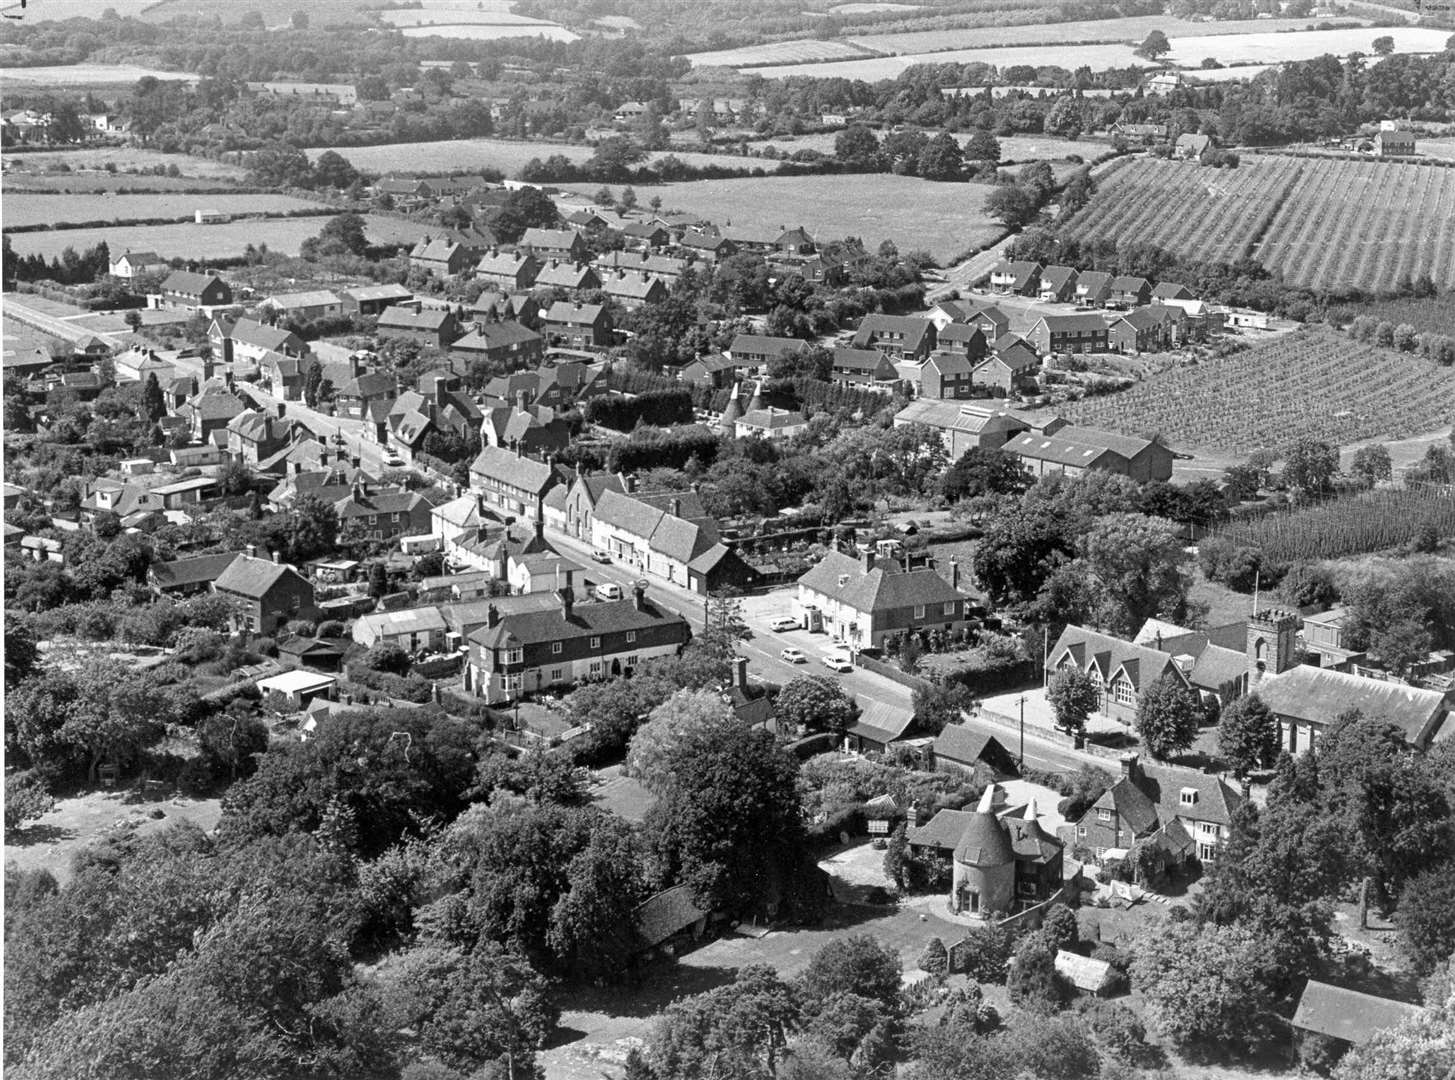 Sissinghurst from above in 1978